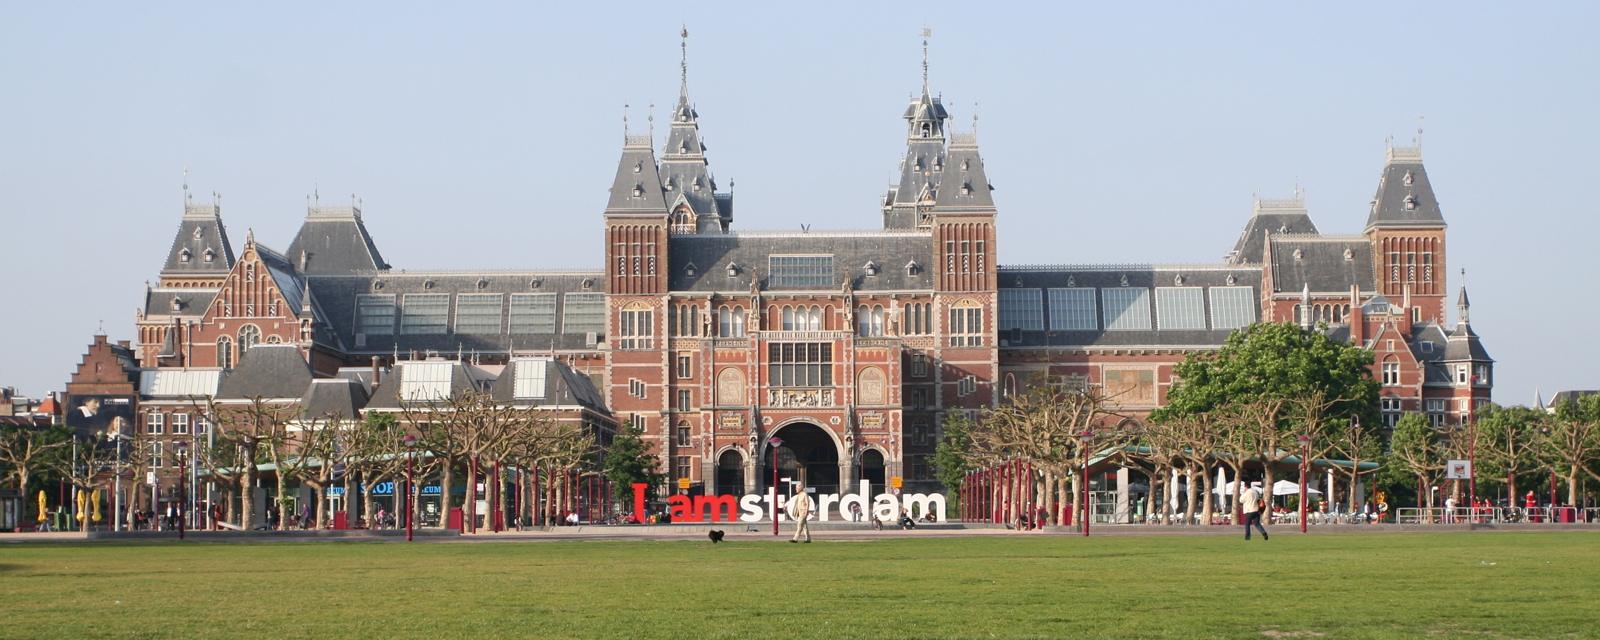 Amsterdam Rijkmuseum